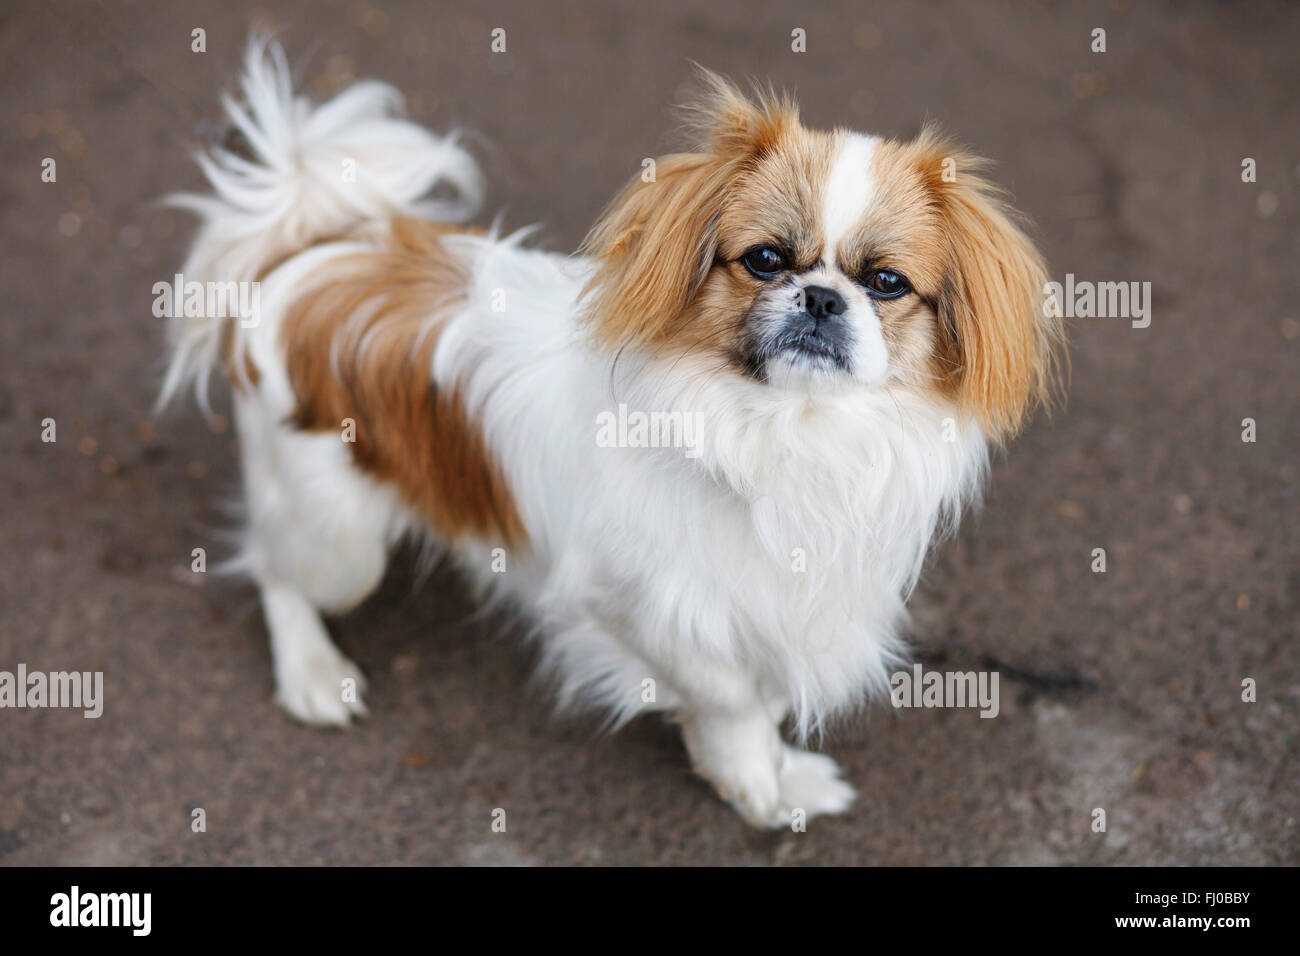 Funny red-haired pekingese dog Stock Photo